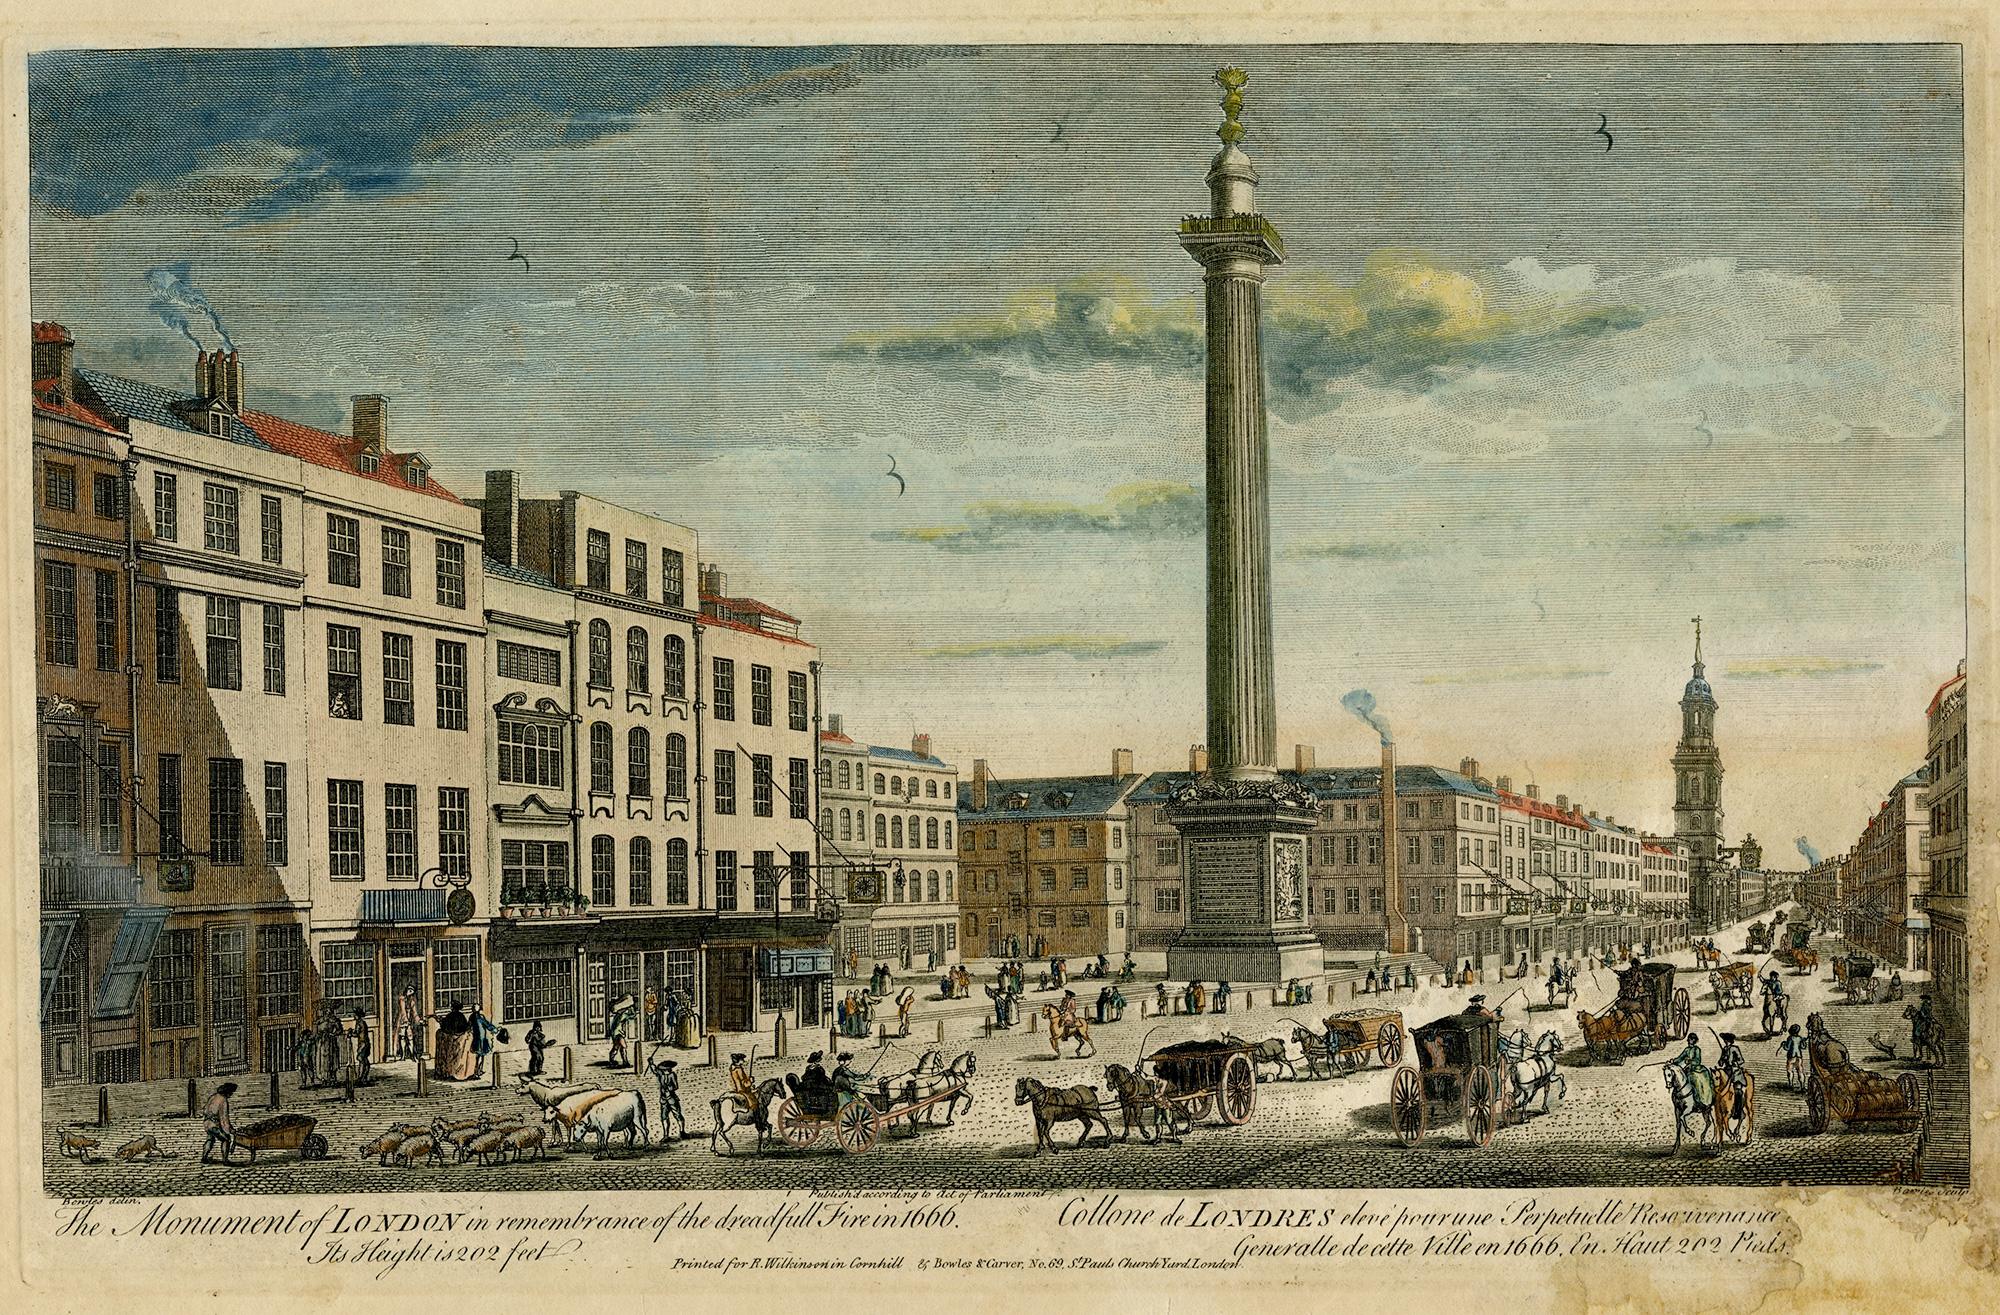 Das Monument von London im Gedenken an das Dreadful Fire von 1666